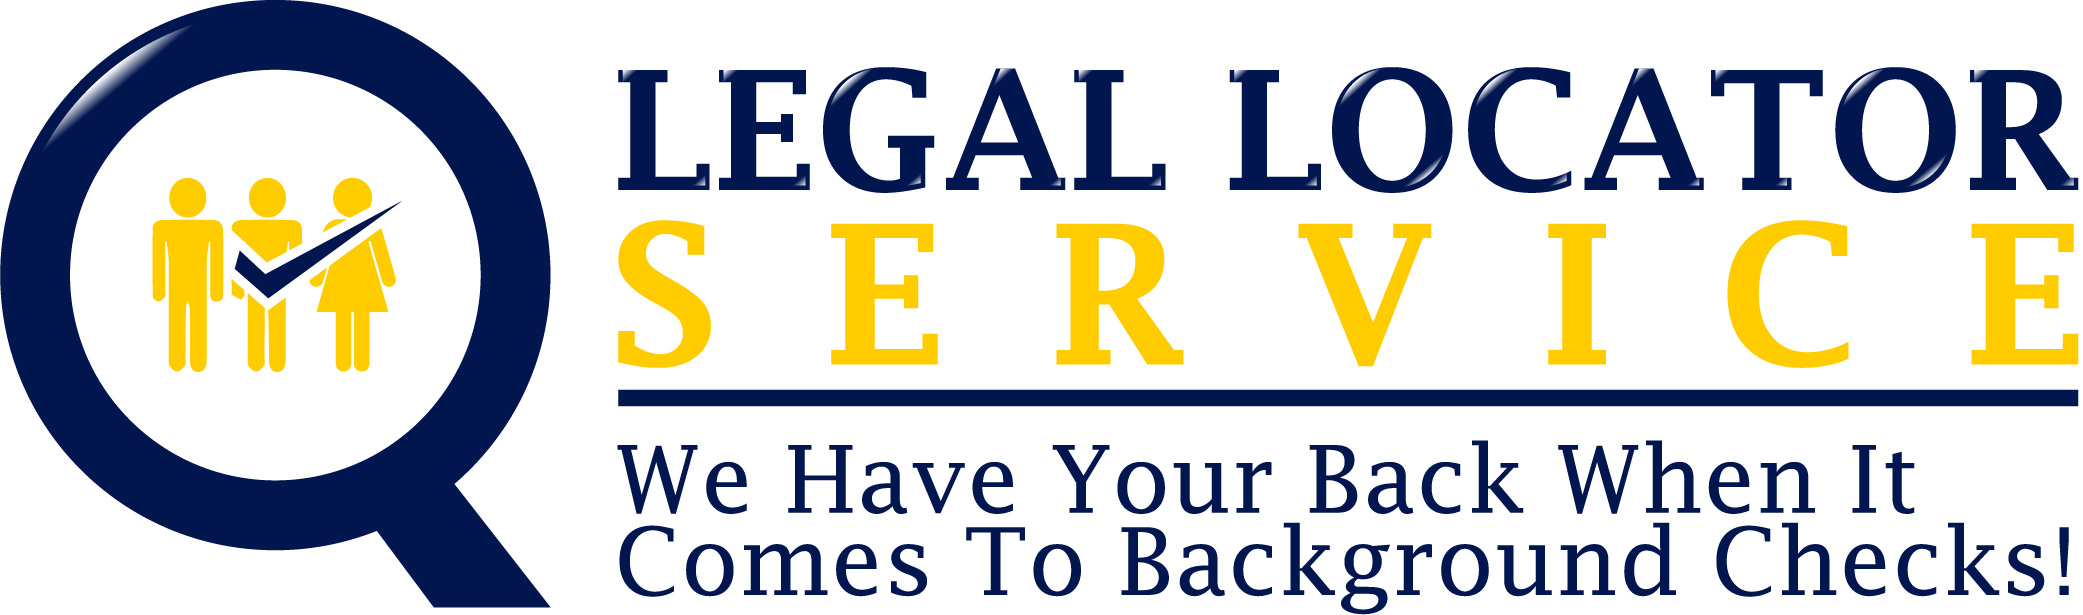 Image of Legal Locator Service, Inc